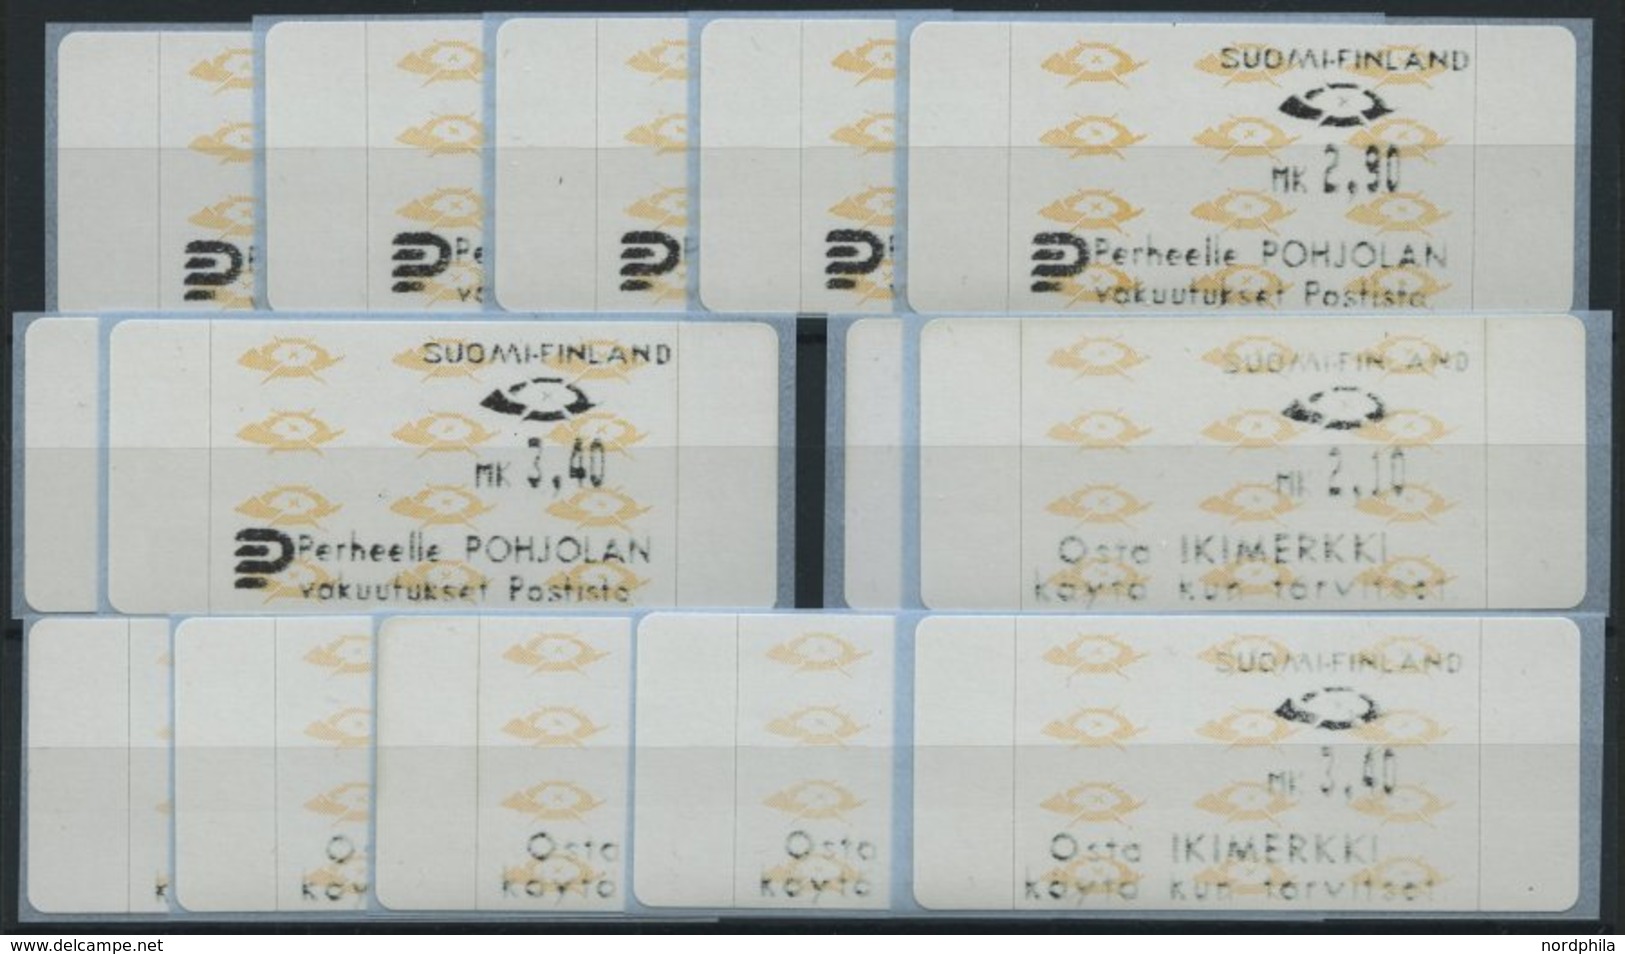 FINNLAND A 12.3,12.4 **, Automatenmarken: 1992, Je 7 Verschiedene Wertstufen Perheelle Pohljolan Und Osta Ikimerkki, Pra - Used Stamps